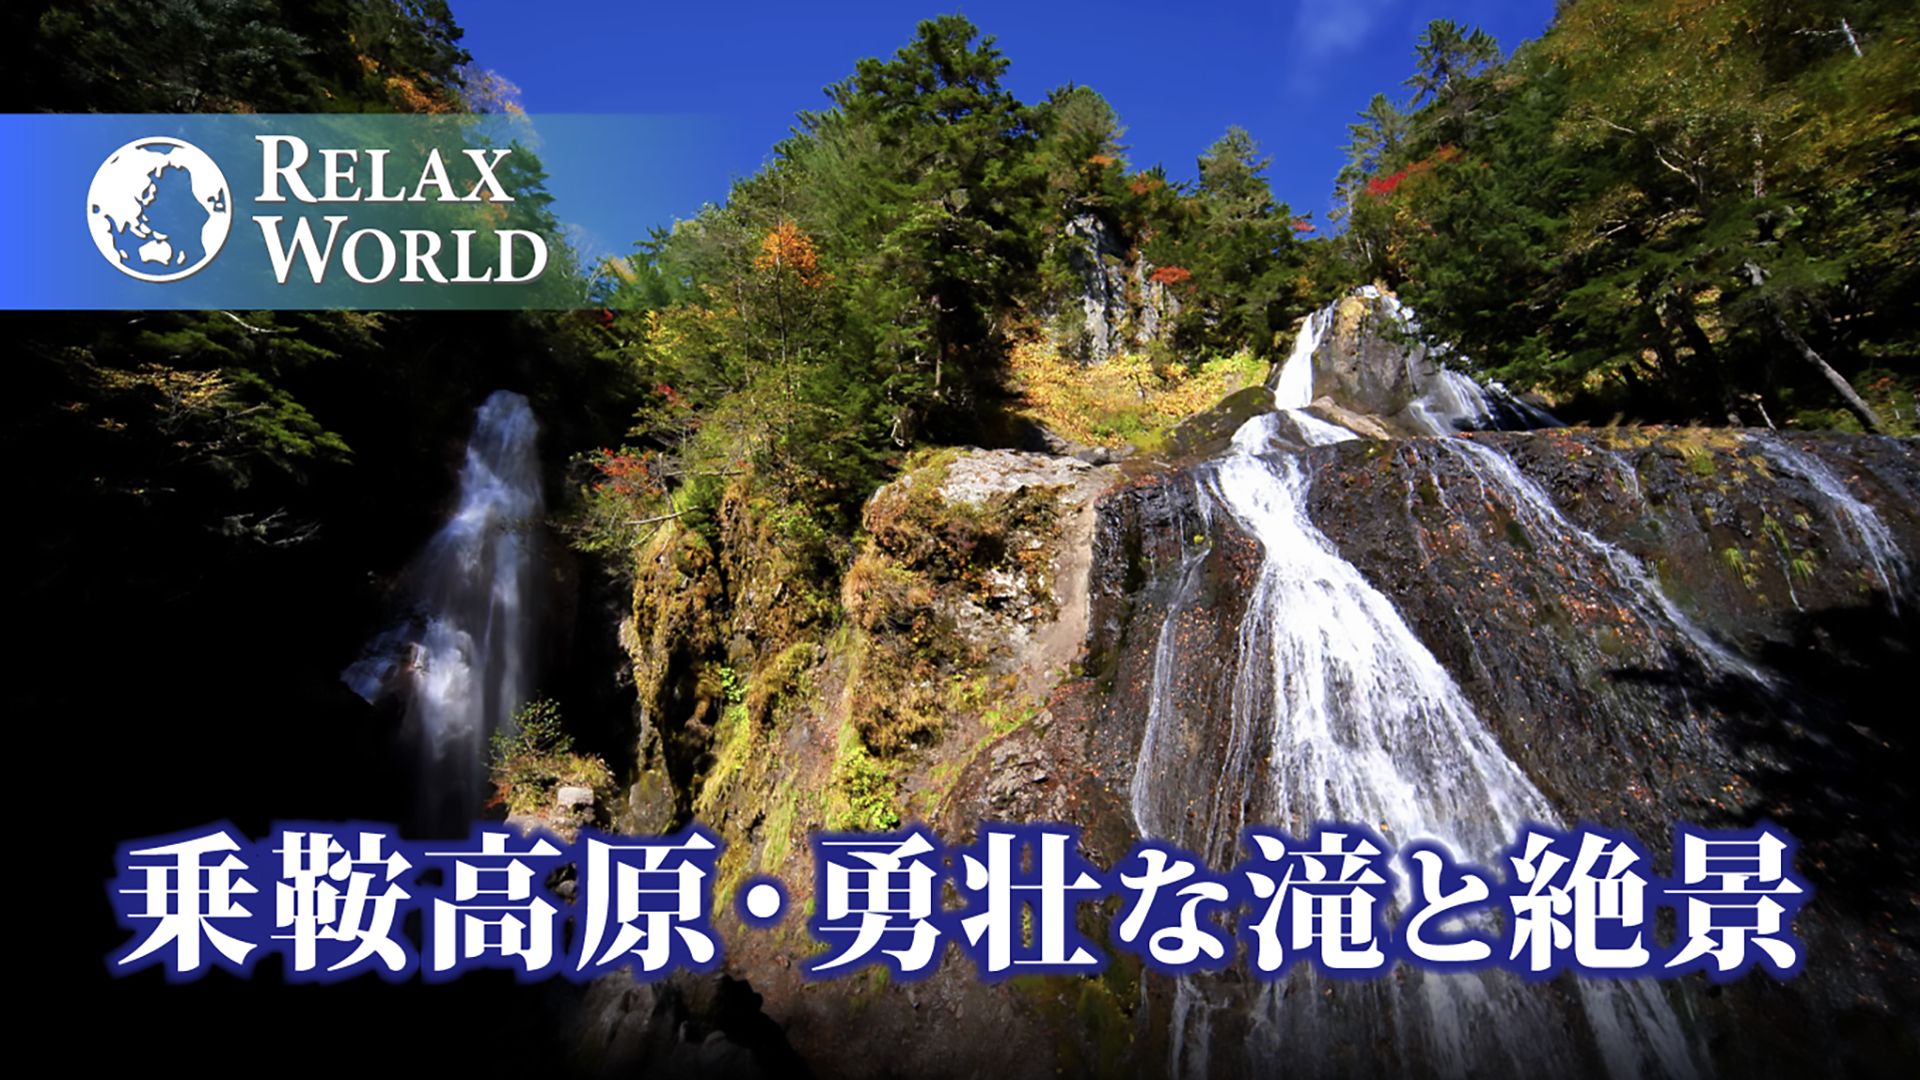 乗鞍高原・勇壮な滝と絶景【RELAX WORLD】